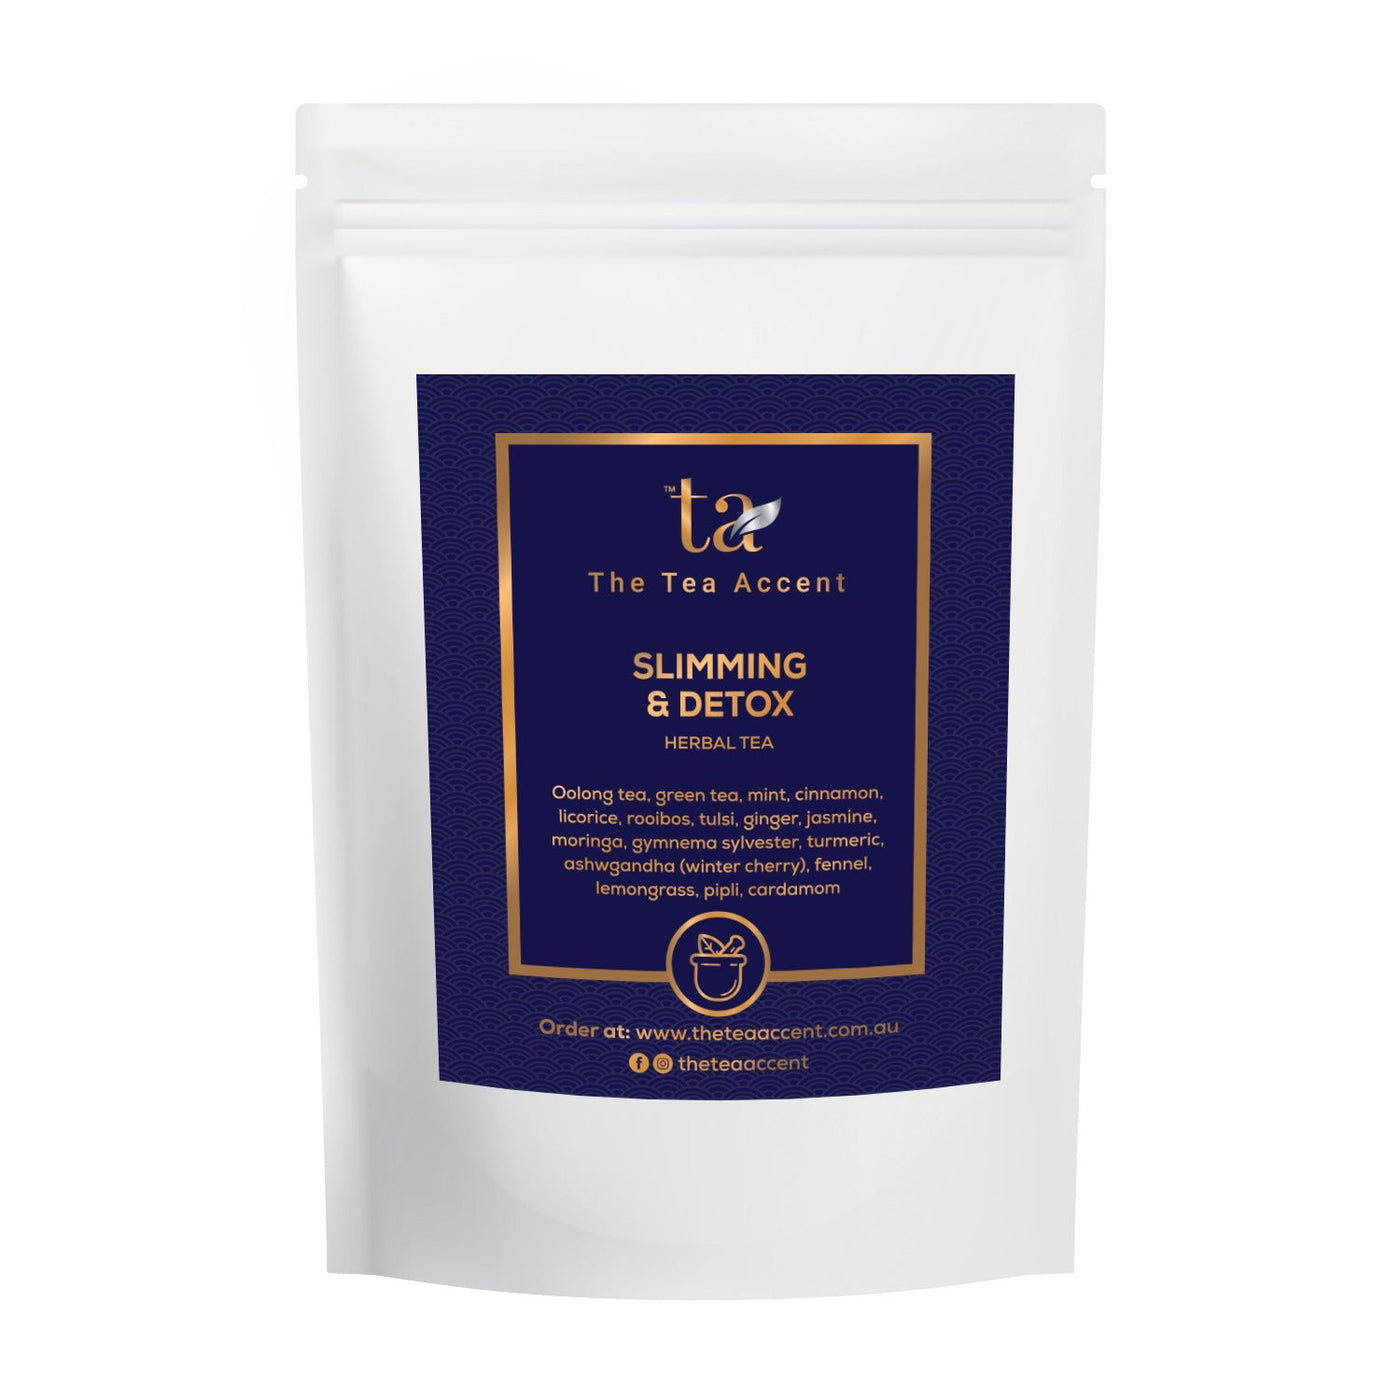 Slimming and Detox Herbal Tea Refill Pack